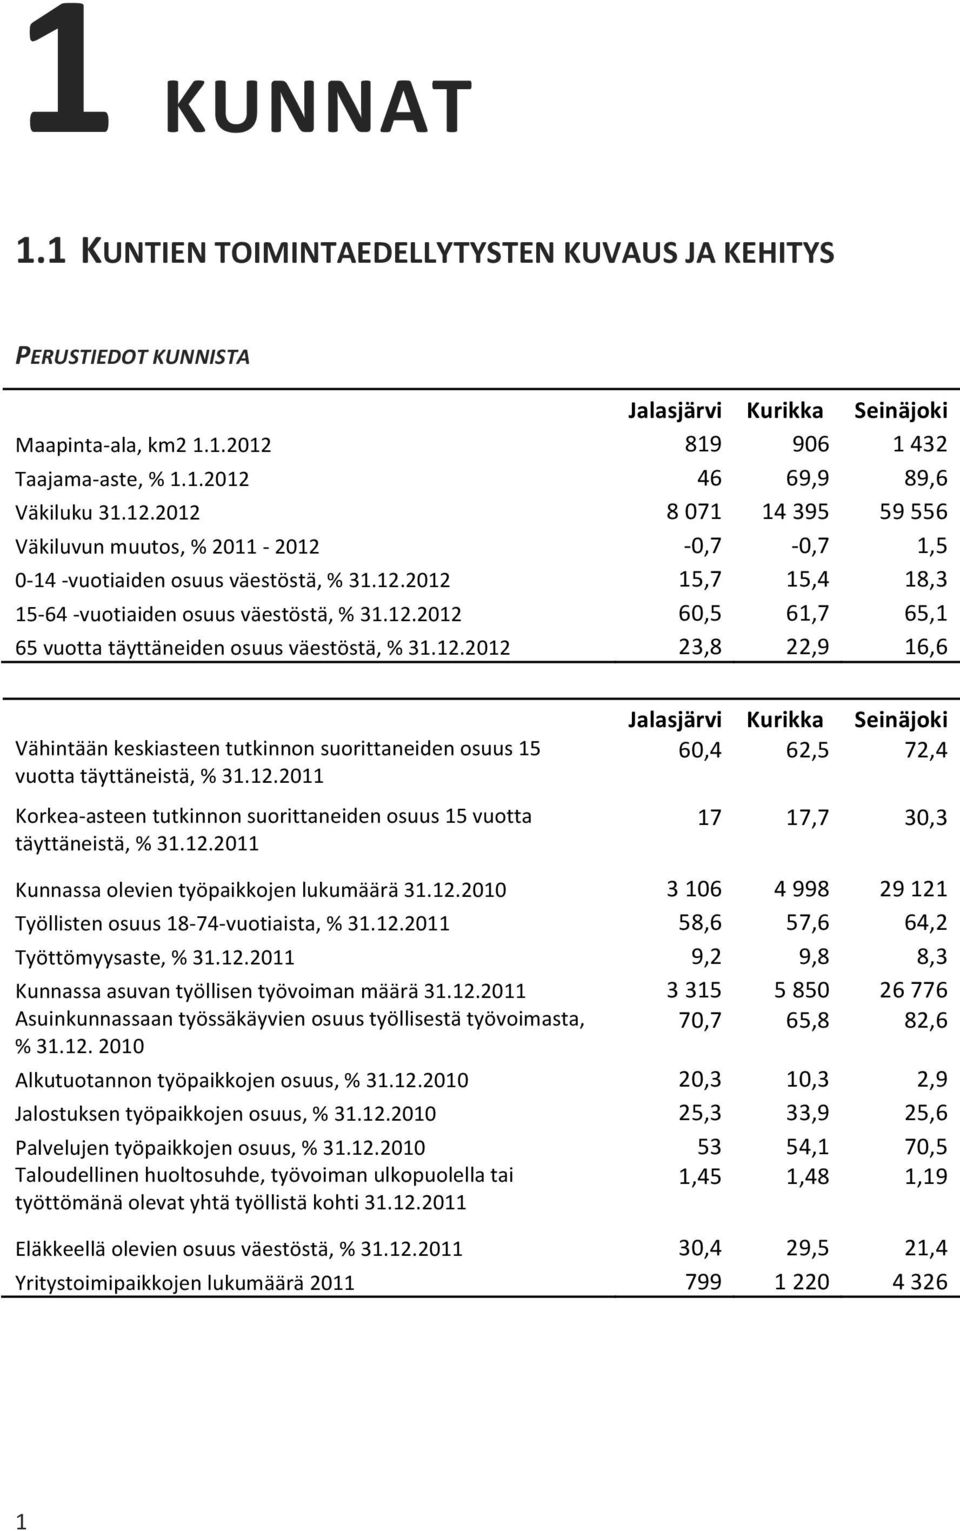 12.2012 23,8 22,9 16,6 Vähintään keskiasteen tutkinnon suorittaneiden osuus 15 vuotta täyttäneistä, % 31.12.2011 Korkea- asteen tutkinnon suorittaneiden osuus 15 vuotta täyttäneistä, % 31.12.2011 Jalasjärvi Kurikka Seinäjoki 60,4 62,5 72,4 17 17,7 30,3 Kunnassa olevien työpaikkojen lukumäärä 31.